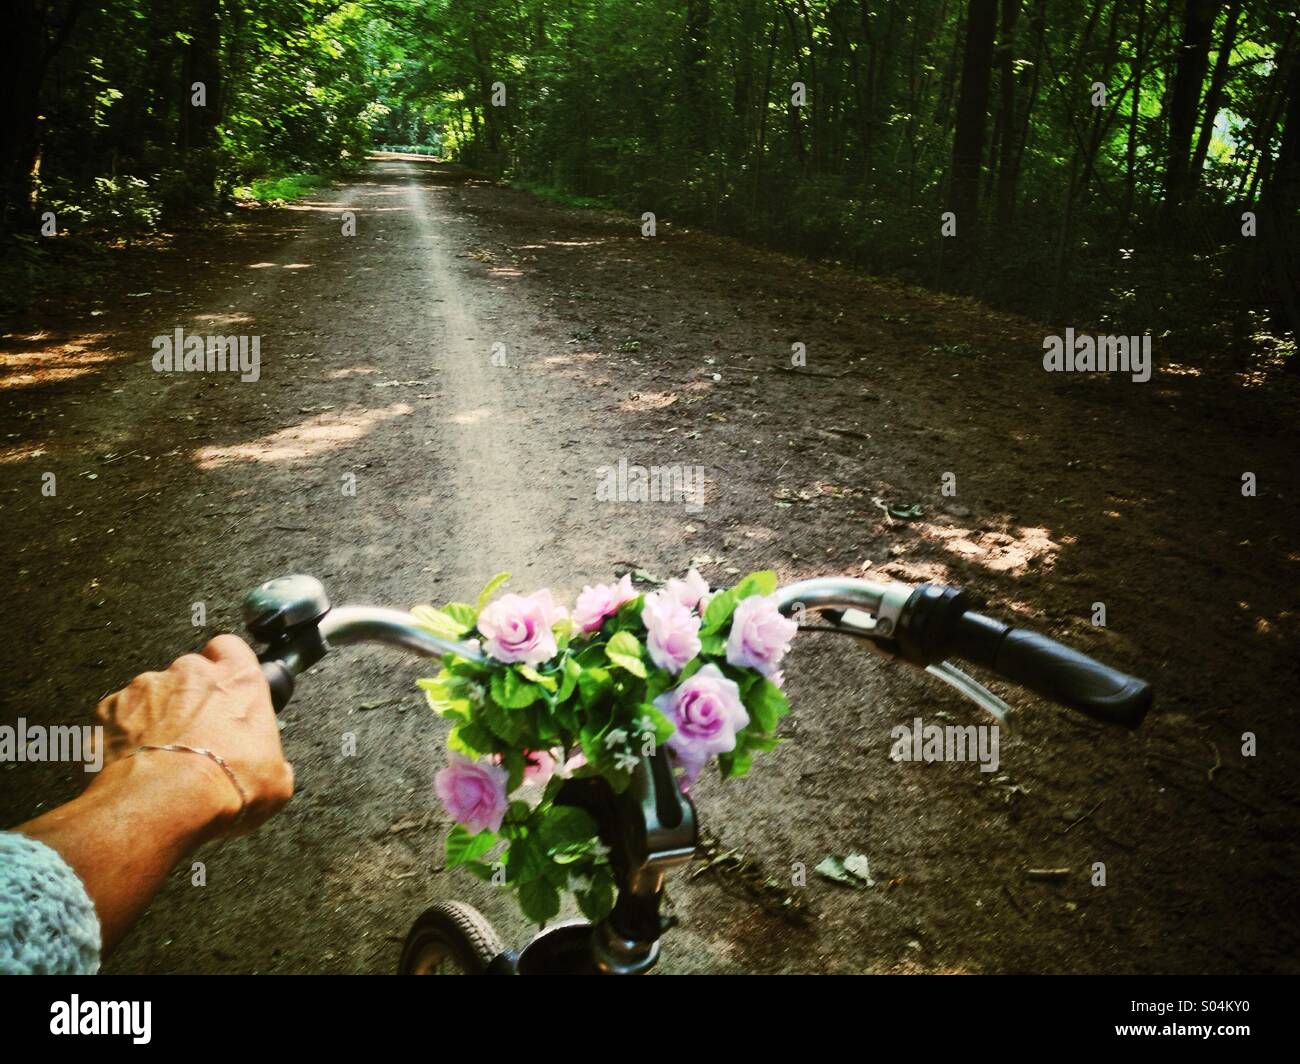 Escursioni in bicicletta attraverso il parco nei pressi di donna di mano che impugna il manubrio di bicicletta, vista di Lane attraverso boschi, luce solare Foto Stock